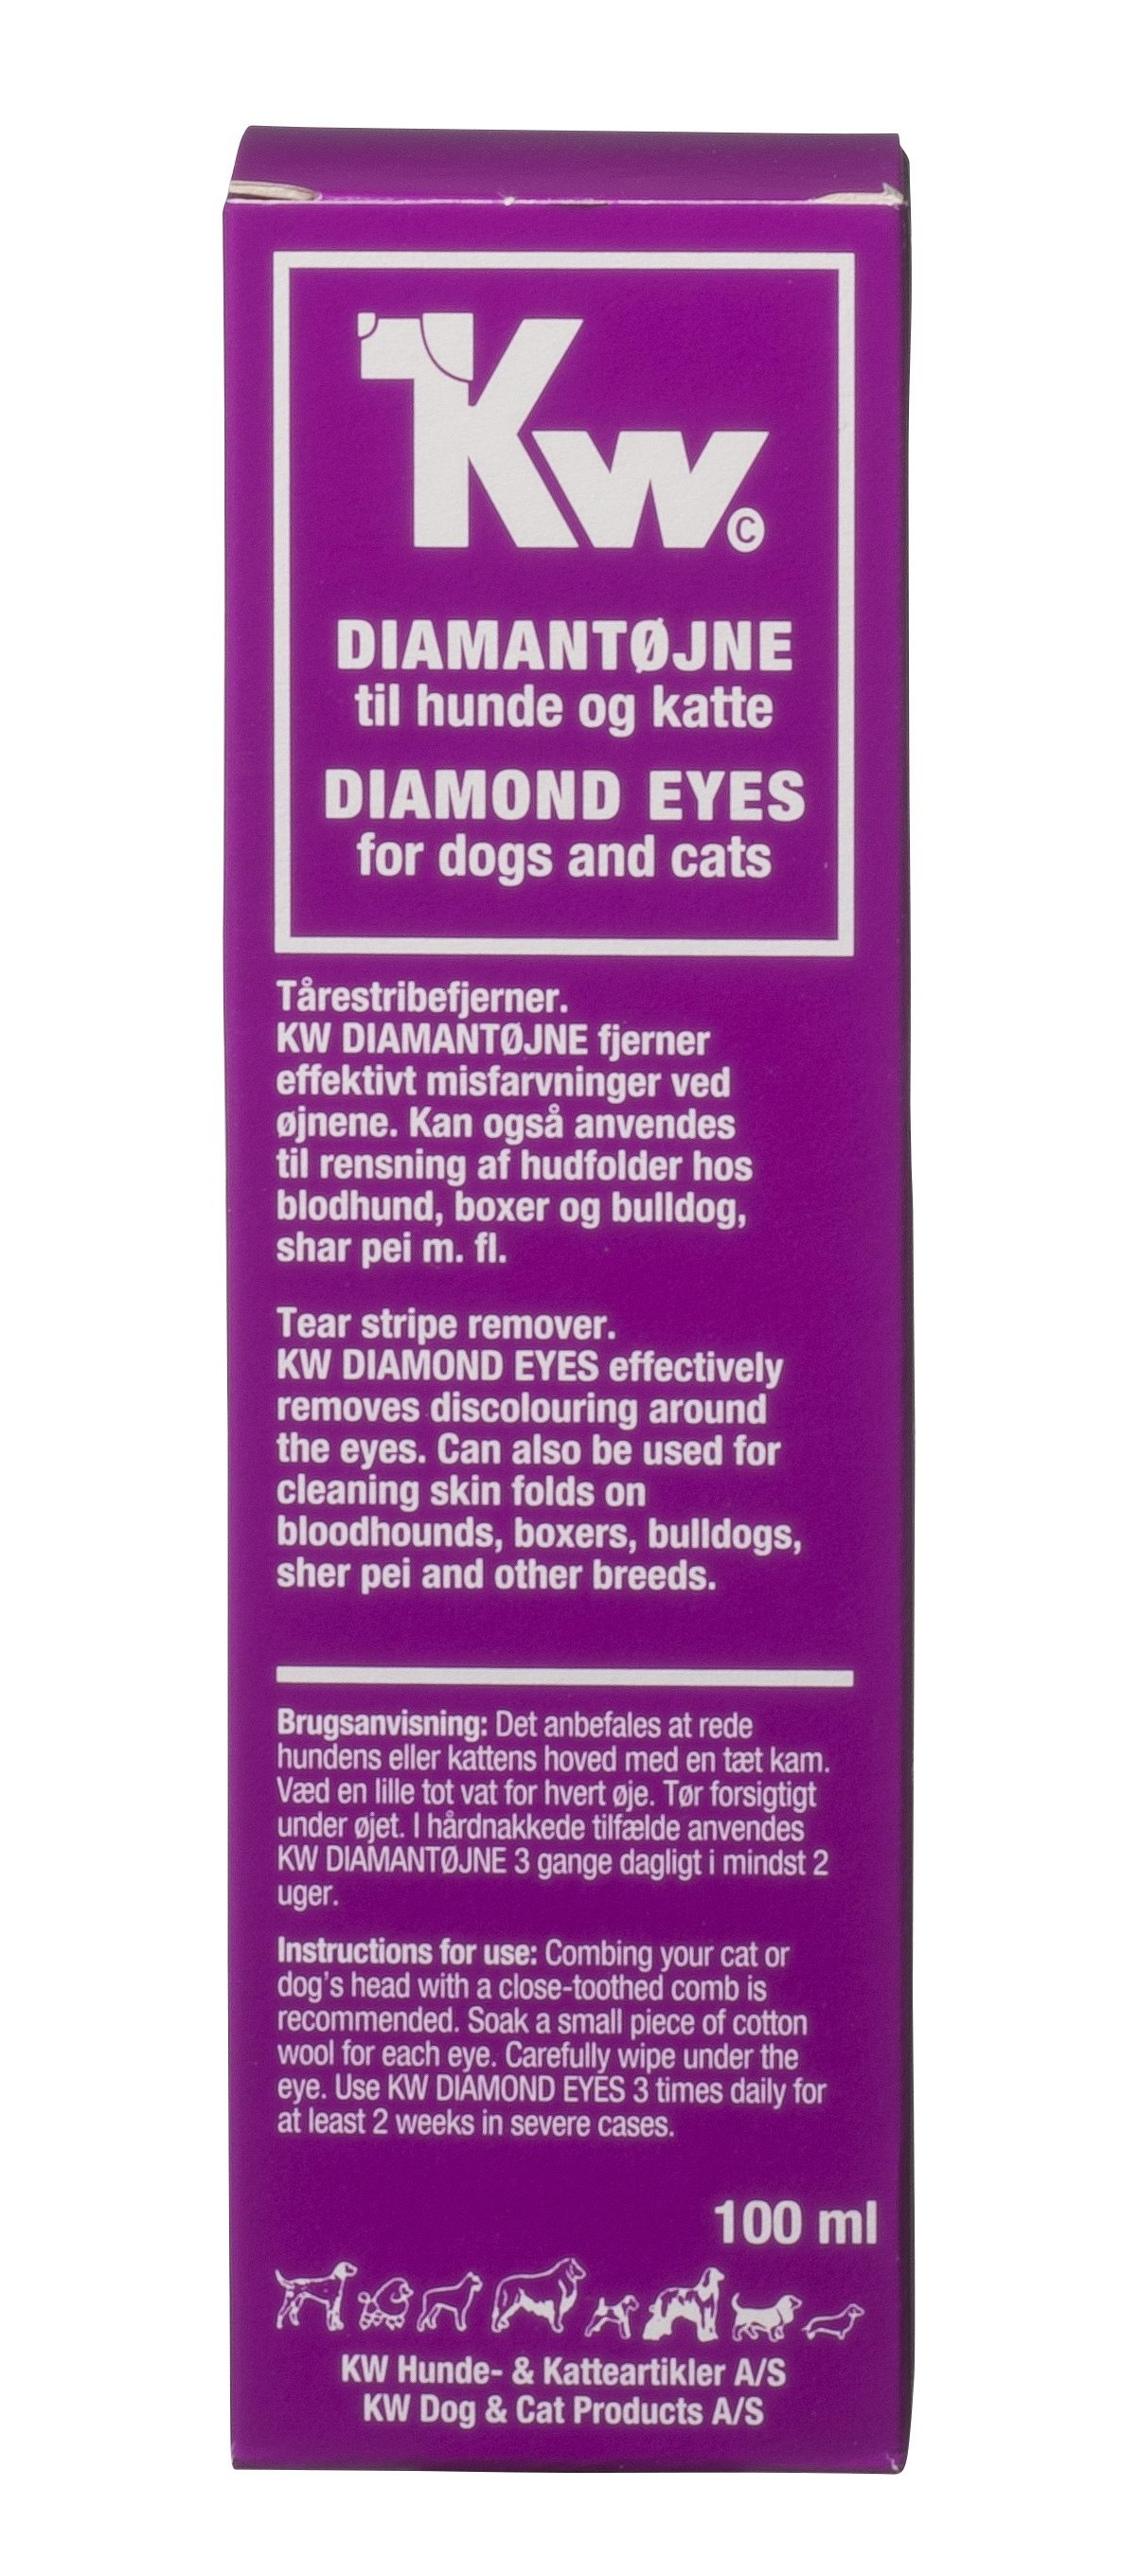 KW Бриллиантовые глаза - средство для удаления слёзных дорожек